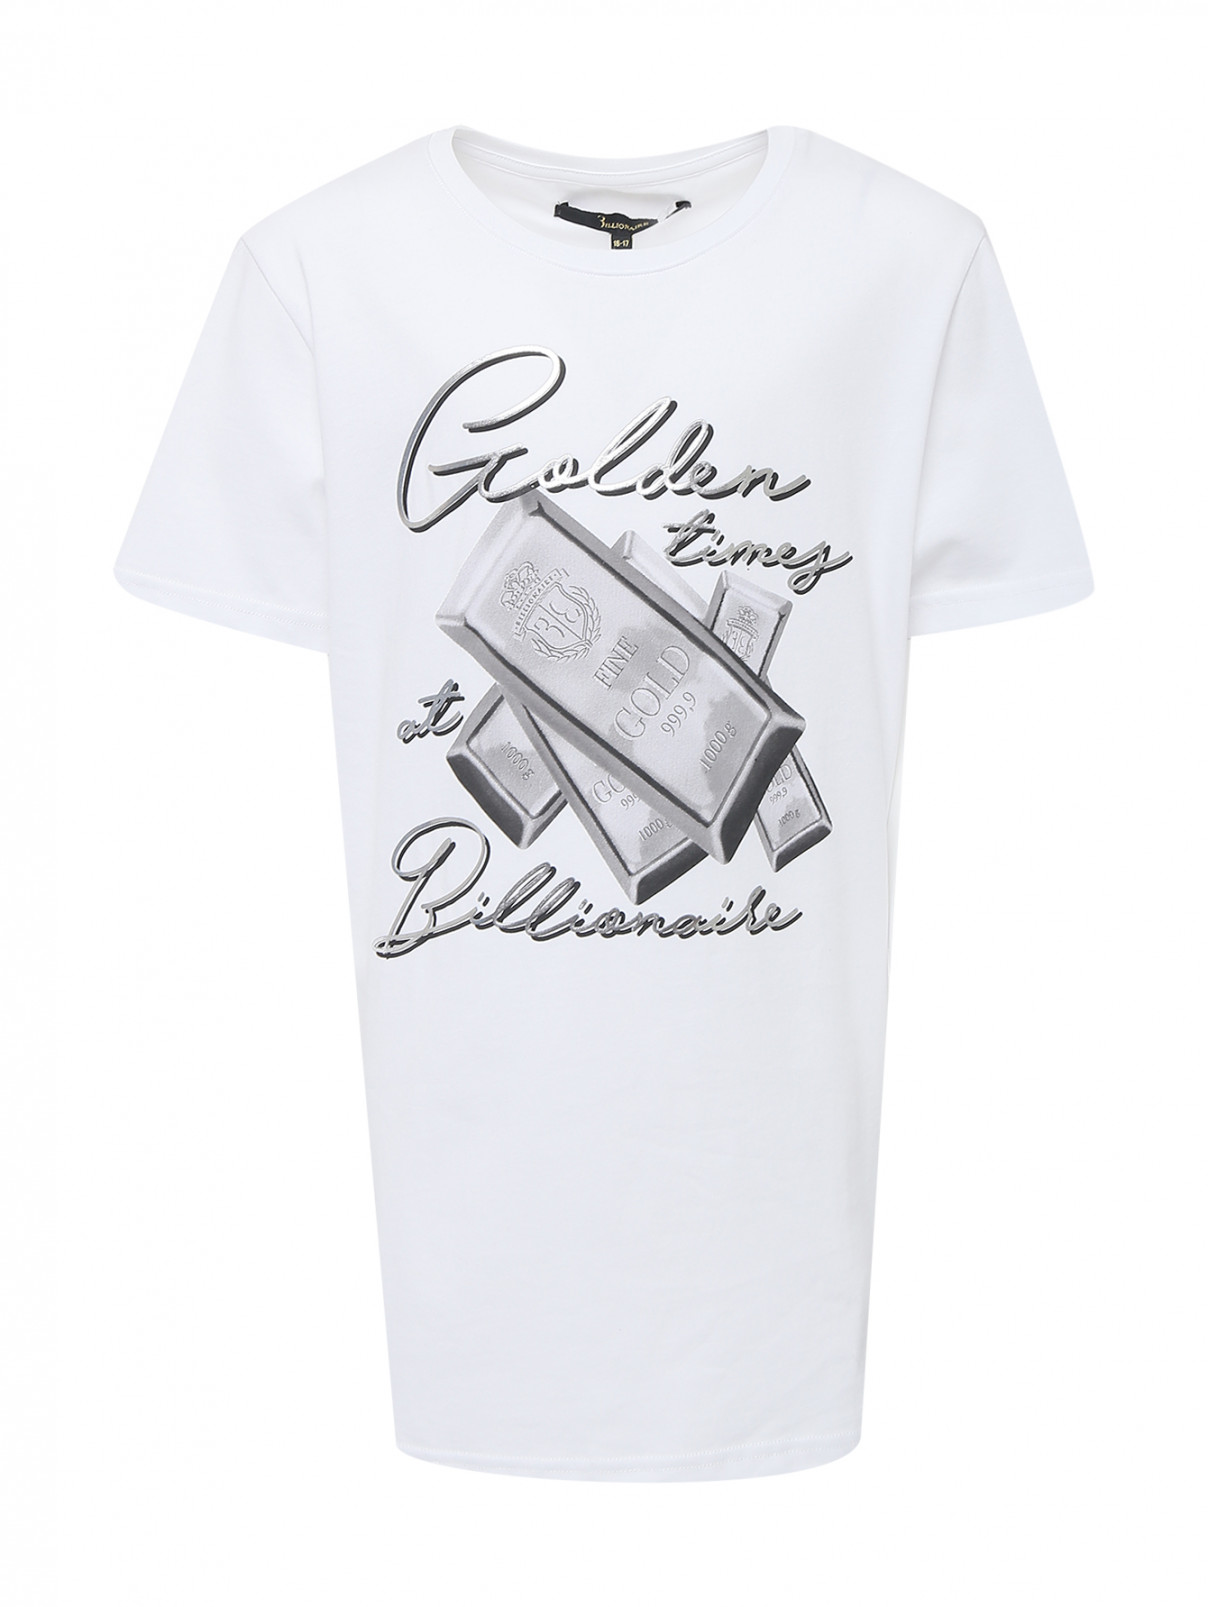 Хлопковая футболка с принтом Billionaire  –  Общий вид  – Цвет:  Белый